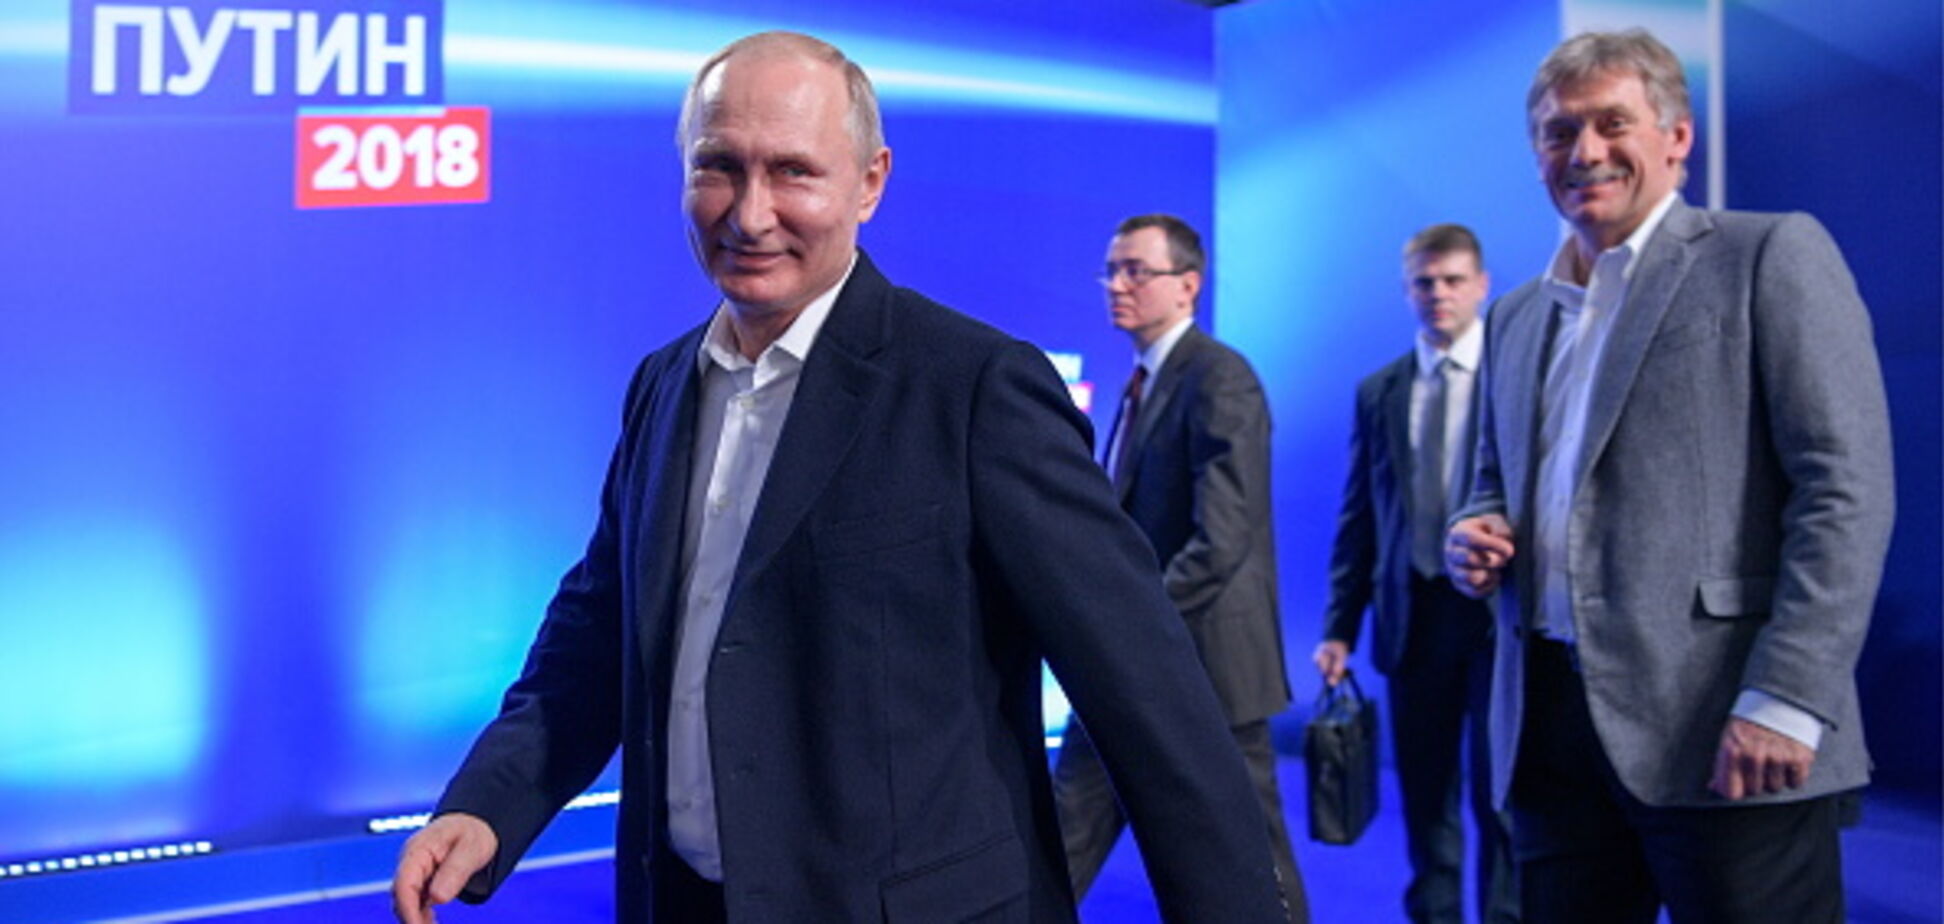 Не дожидаясь результатов: у Путина уже готовят инаугурацию и пышный банкет